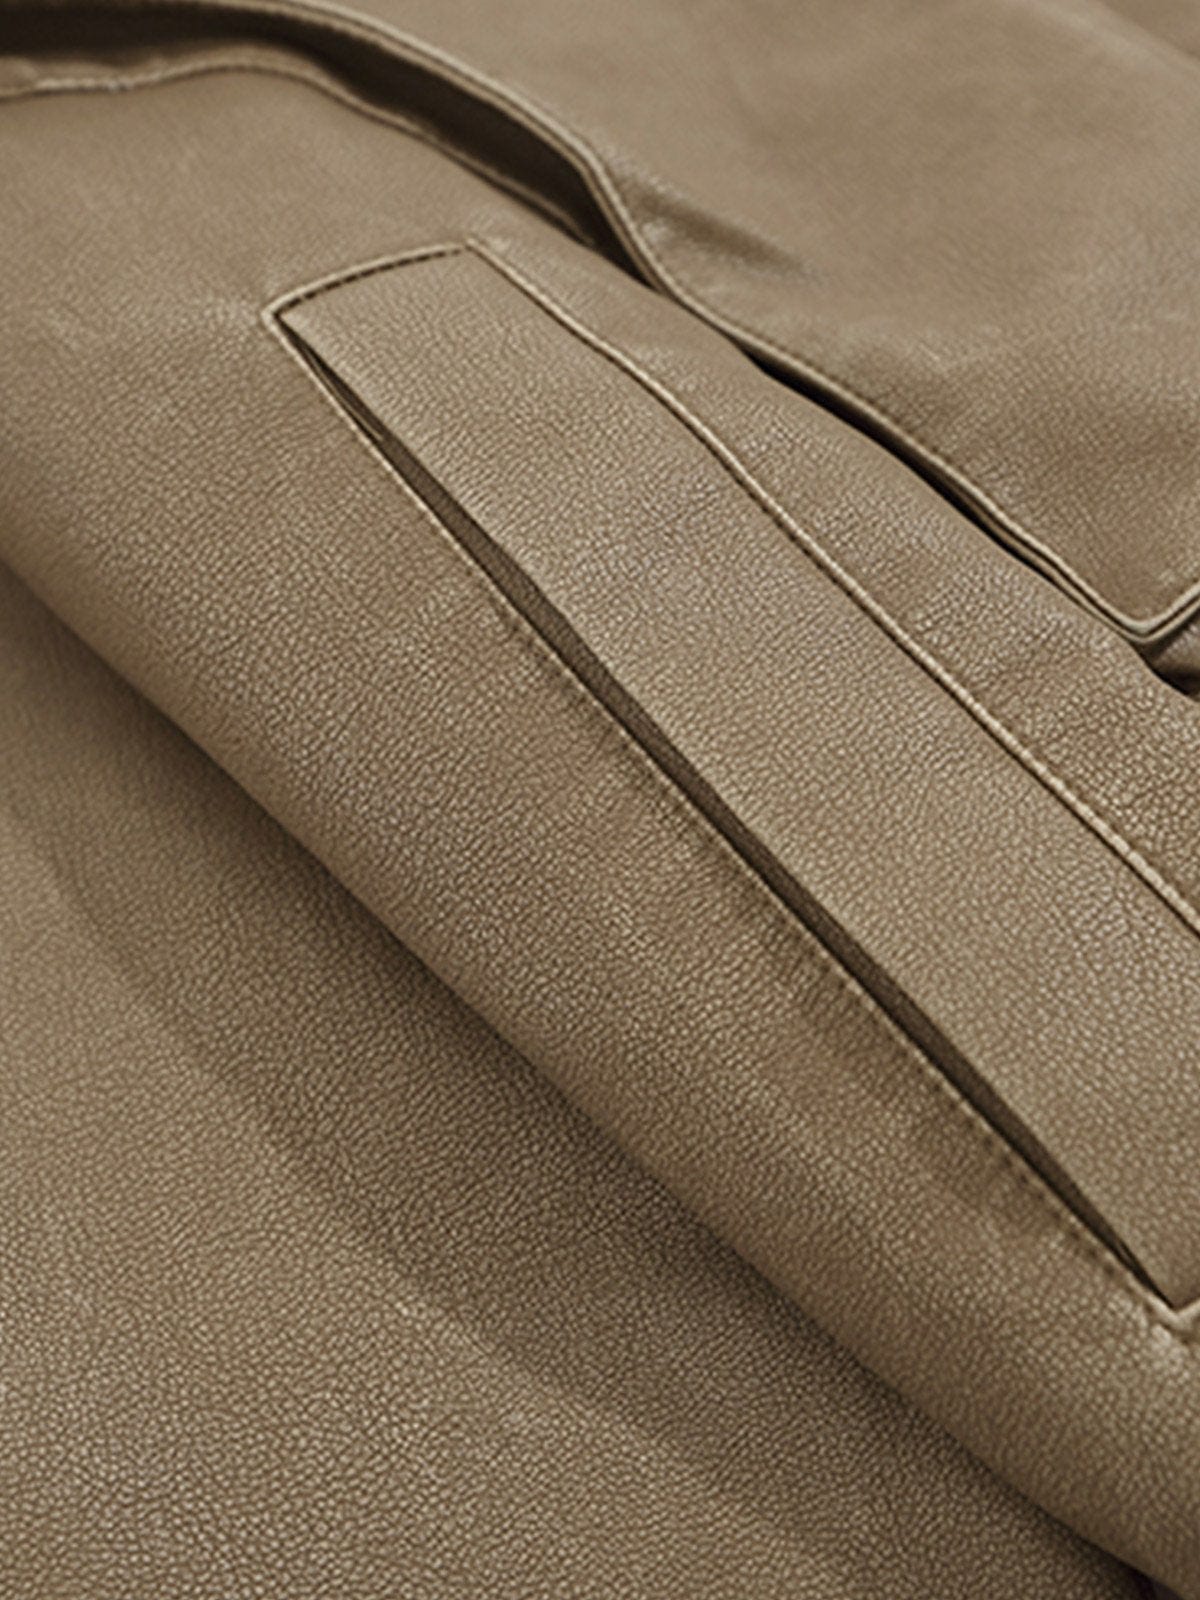 NEV Deconstructed Imitation Leather Jacket